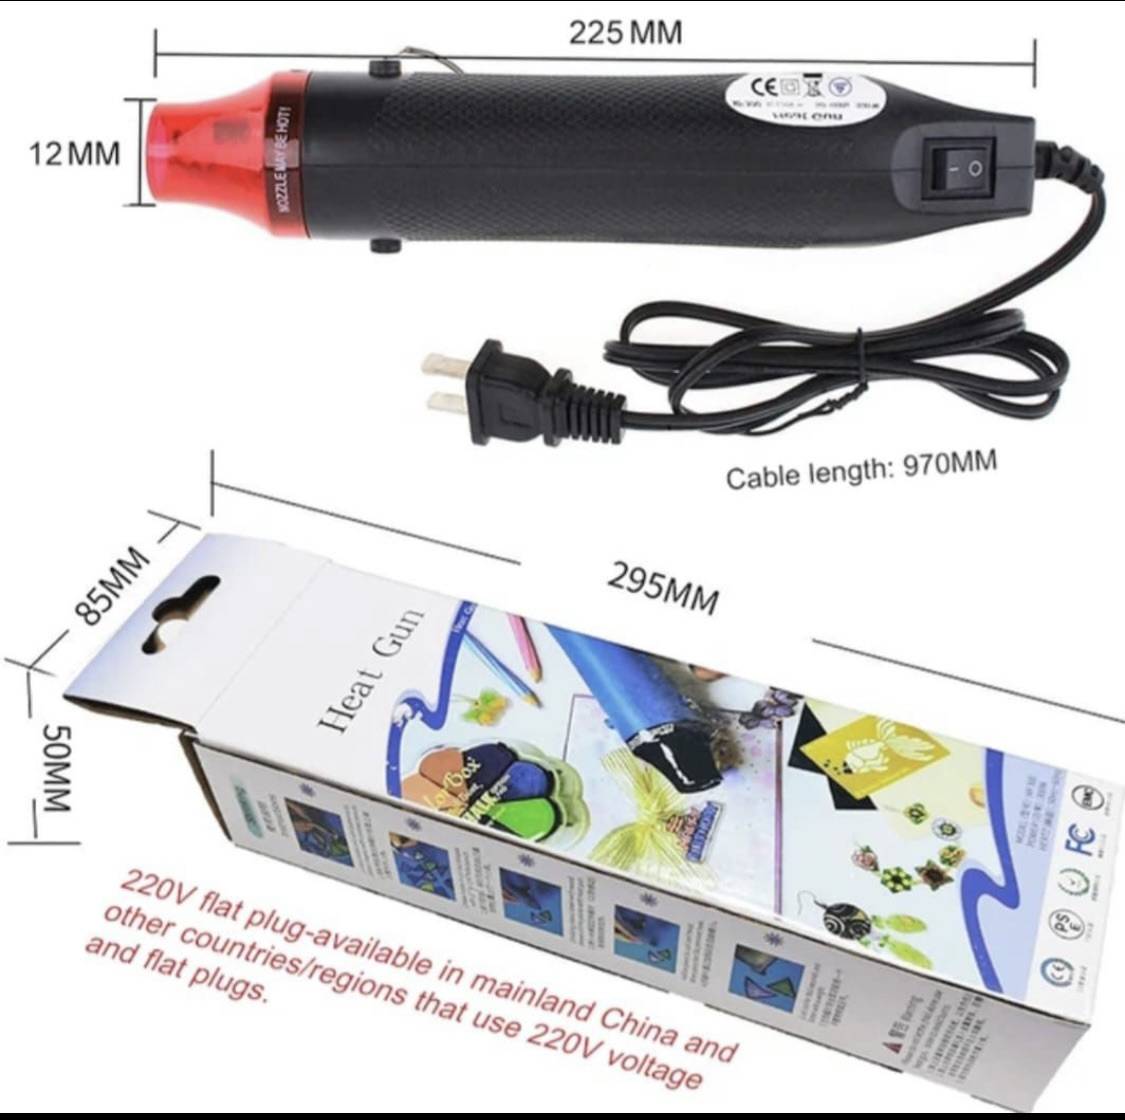 Mini Heat Gun, Electric Hot Air Gun Heating Tools for DIY